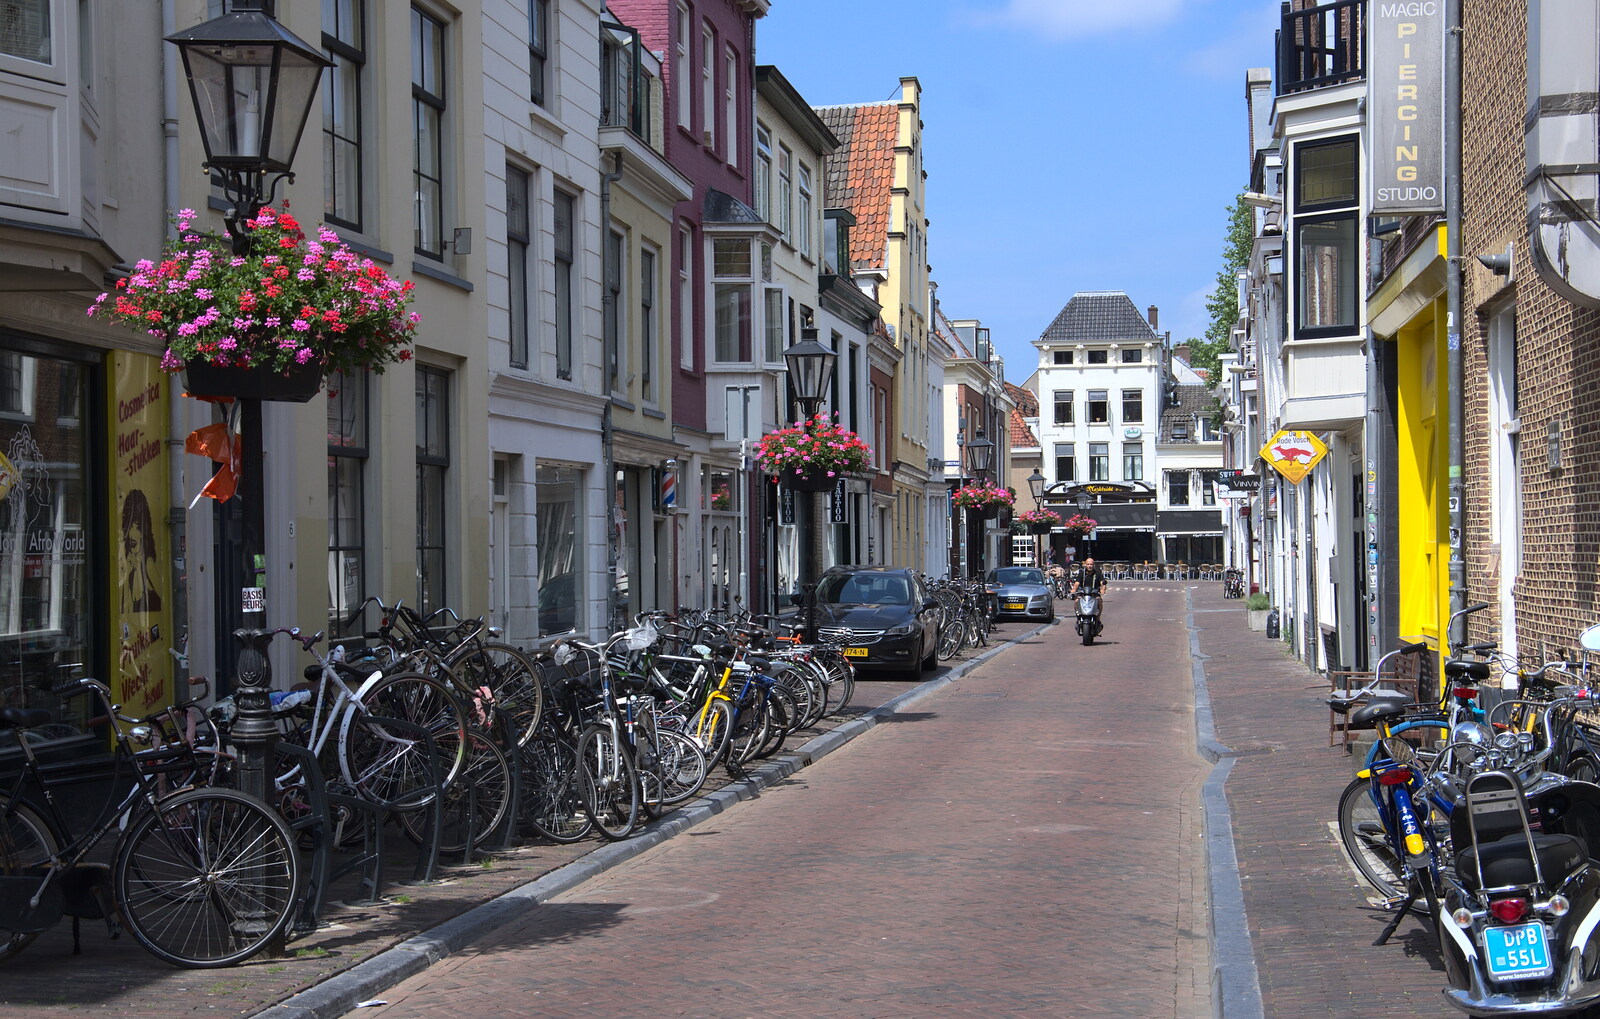 Another Utrecht street from A Postcard from Utrecht, Nederlands - 10th June 2018